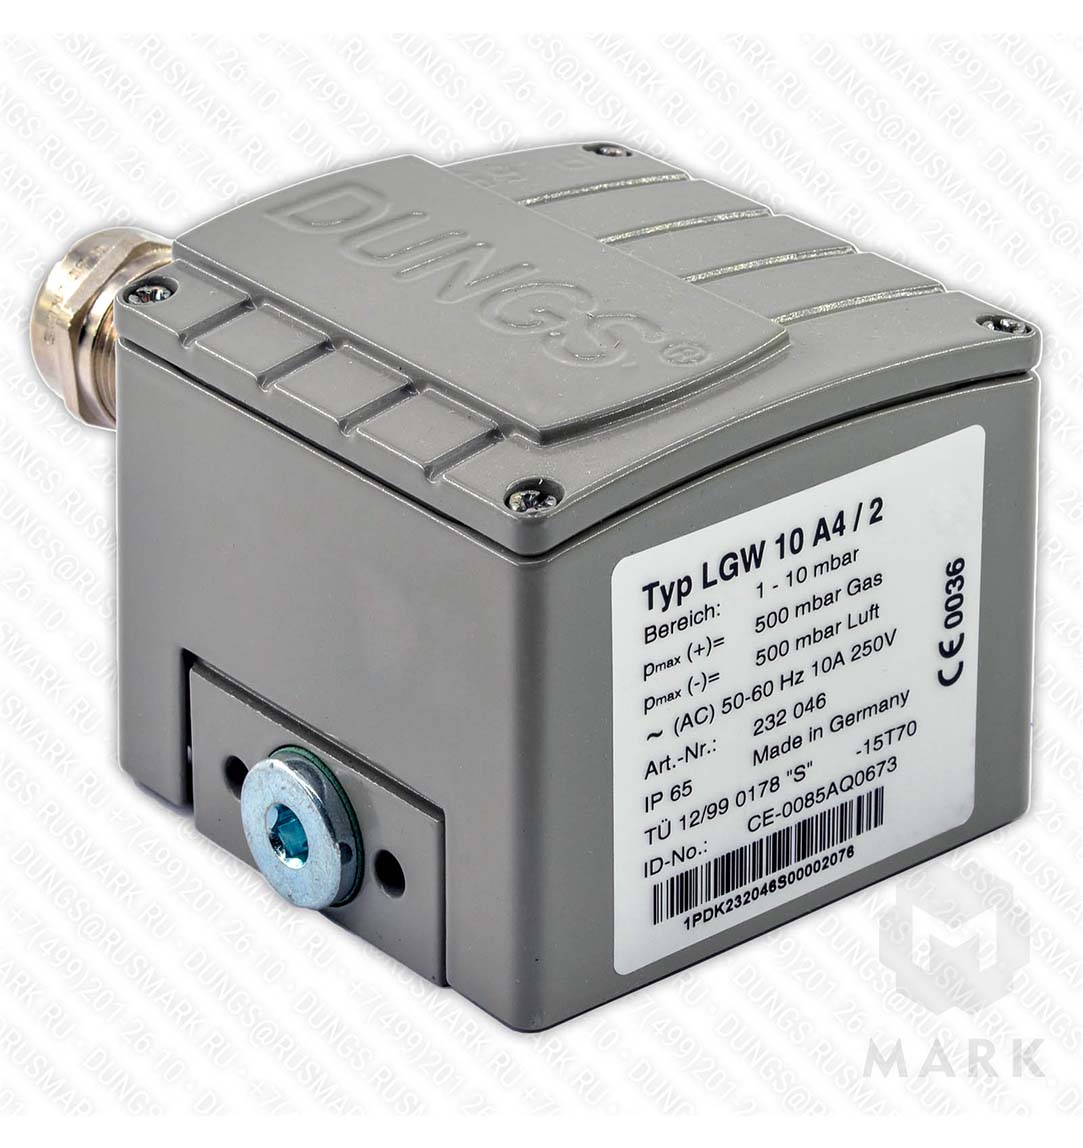 LGW 10 A4/2 Дифференциальный датчик-реле давления газ/воздух DUNGS